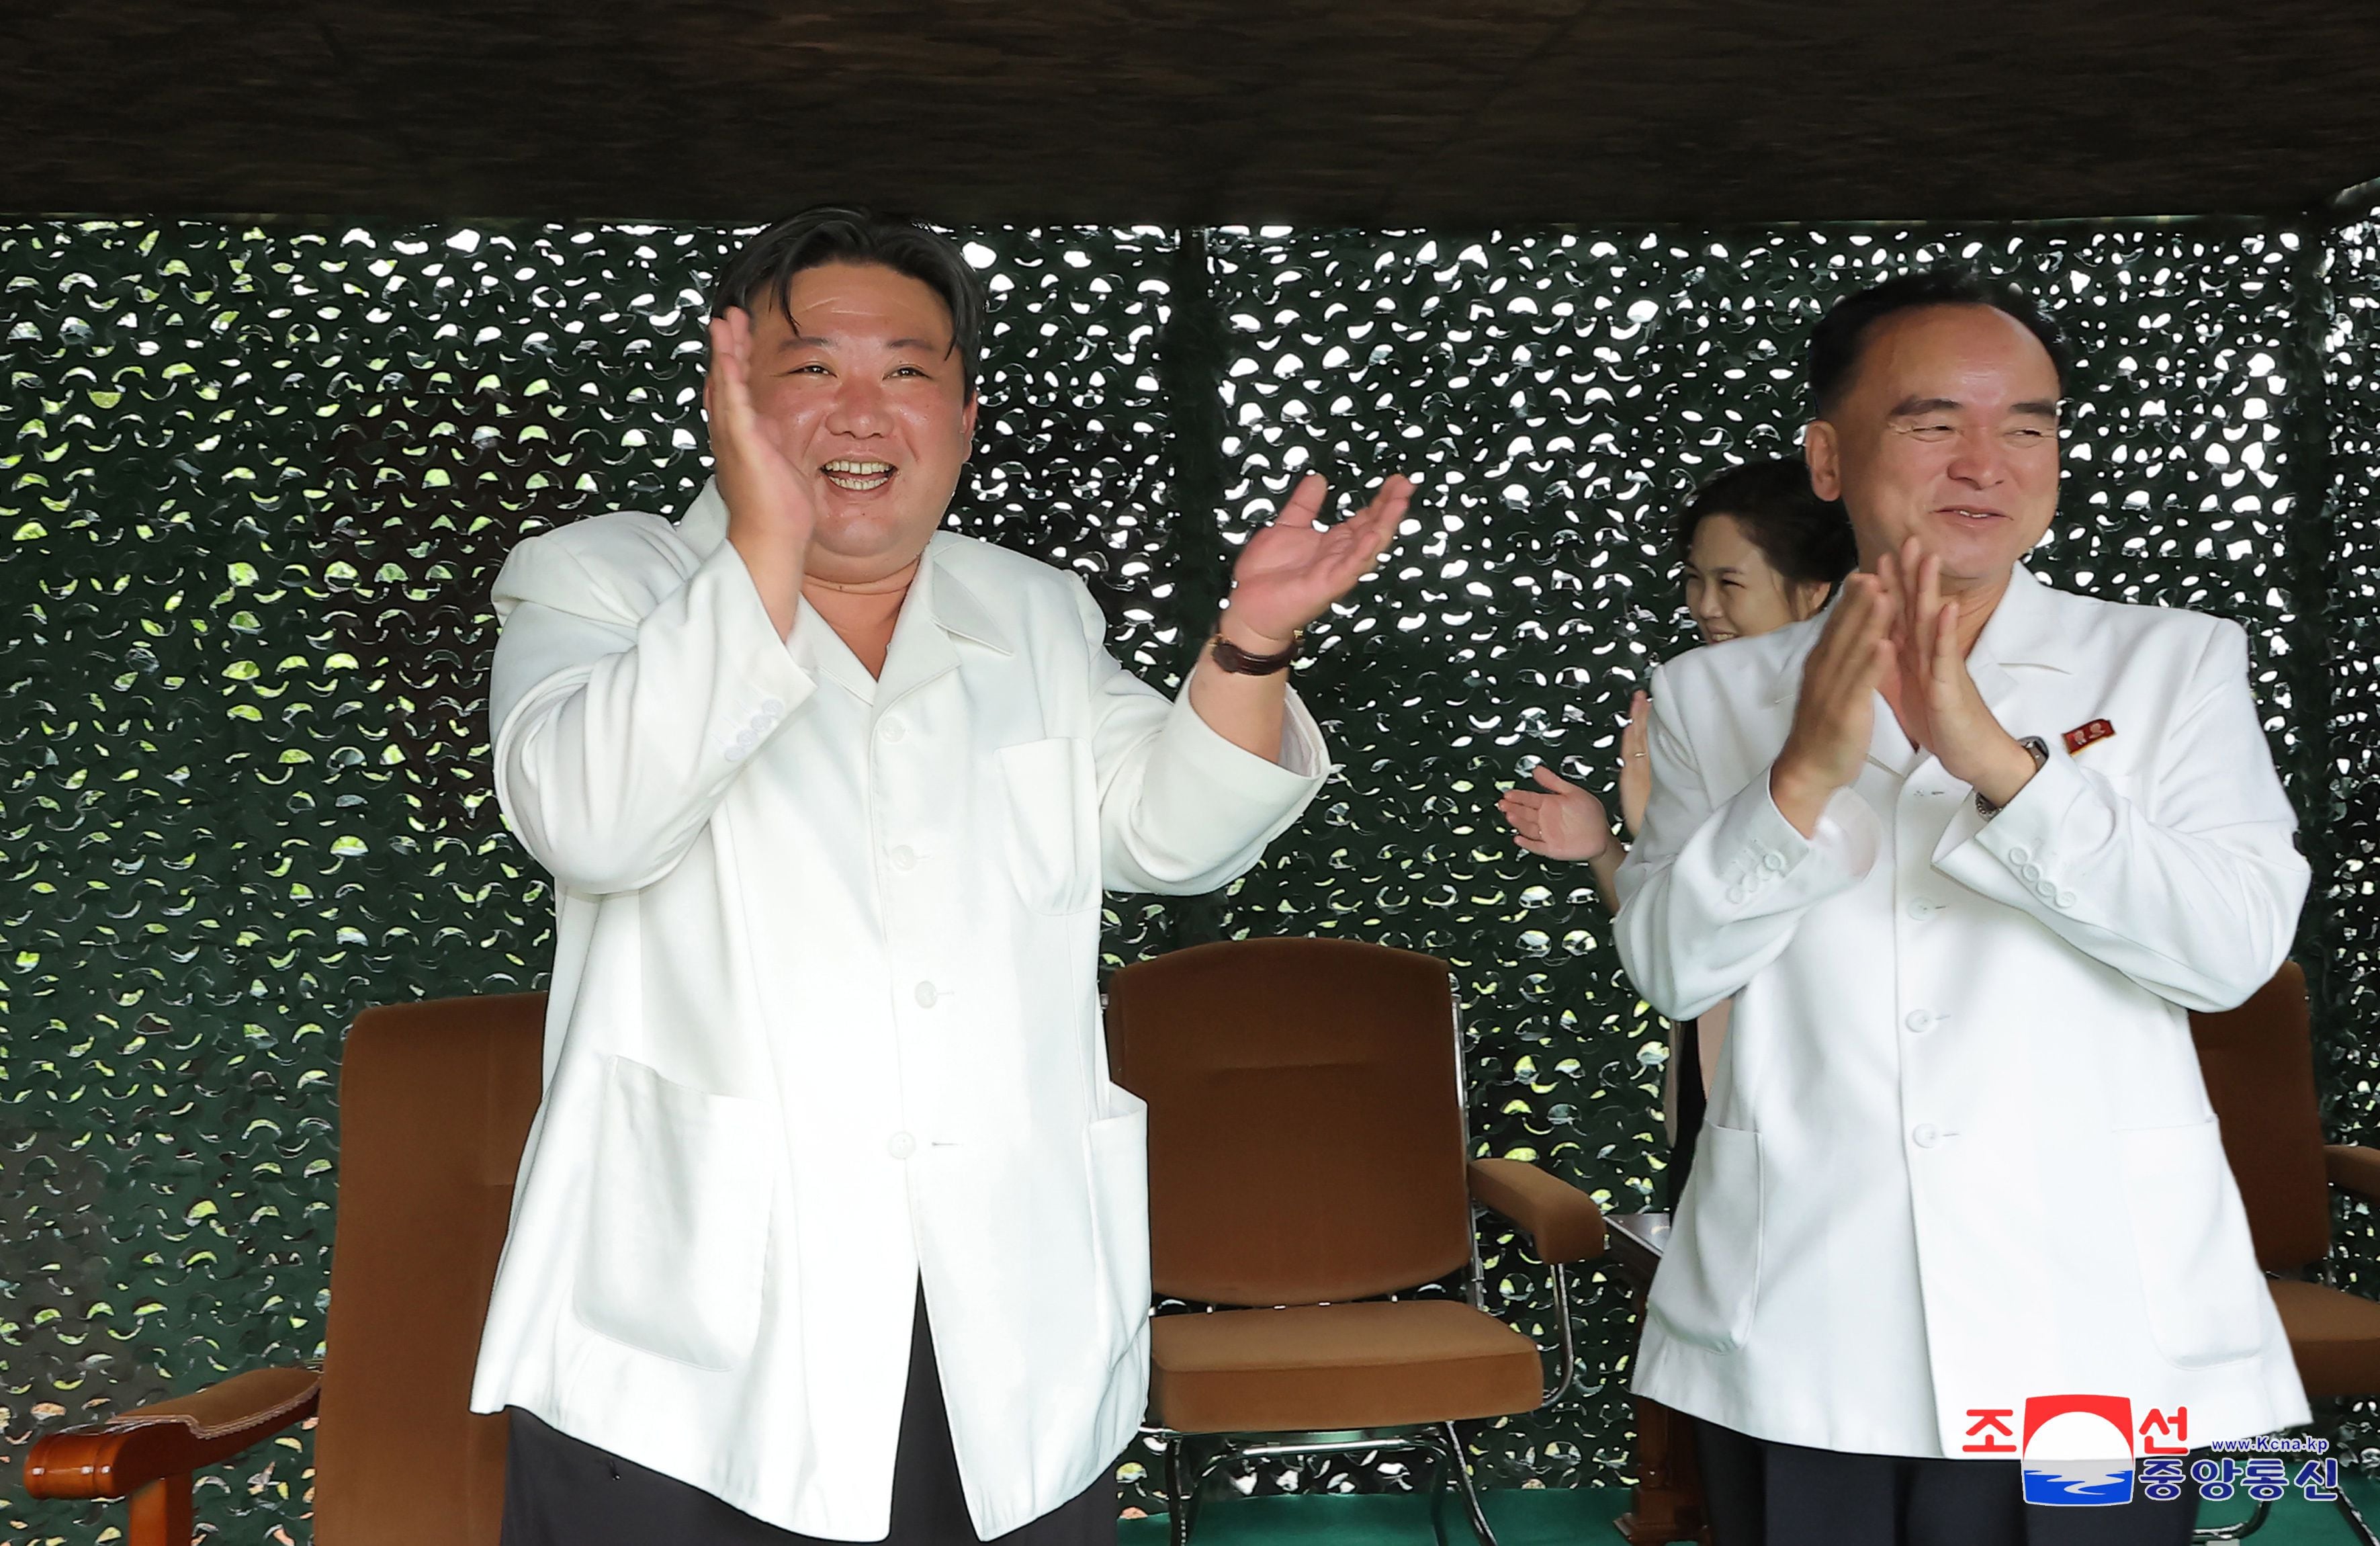 El líder norcoreano Kim Jong-un (izq) y Jo Yong-won, secretario de asuntos organizativos del comité central del Partido de los Trabajadores, asisten al lanzamiento de un misil balístico intercontinental (ICBM) de combustible sólido Hwasong-18, en un lugar no revelado en Corea del Norte, el 12 de julio de 2023. EFE/EPA/KCNA EDITORIAL USE ONLY

